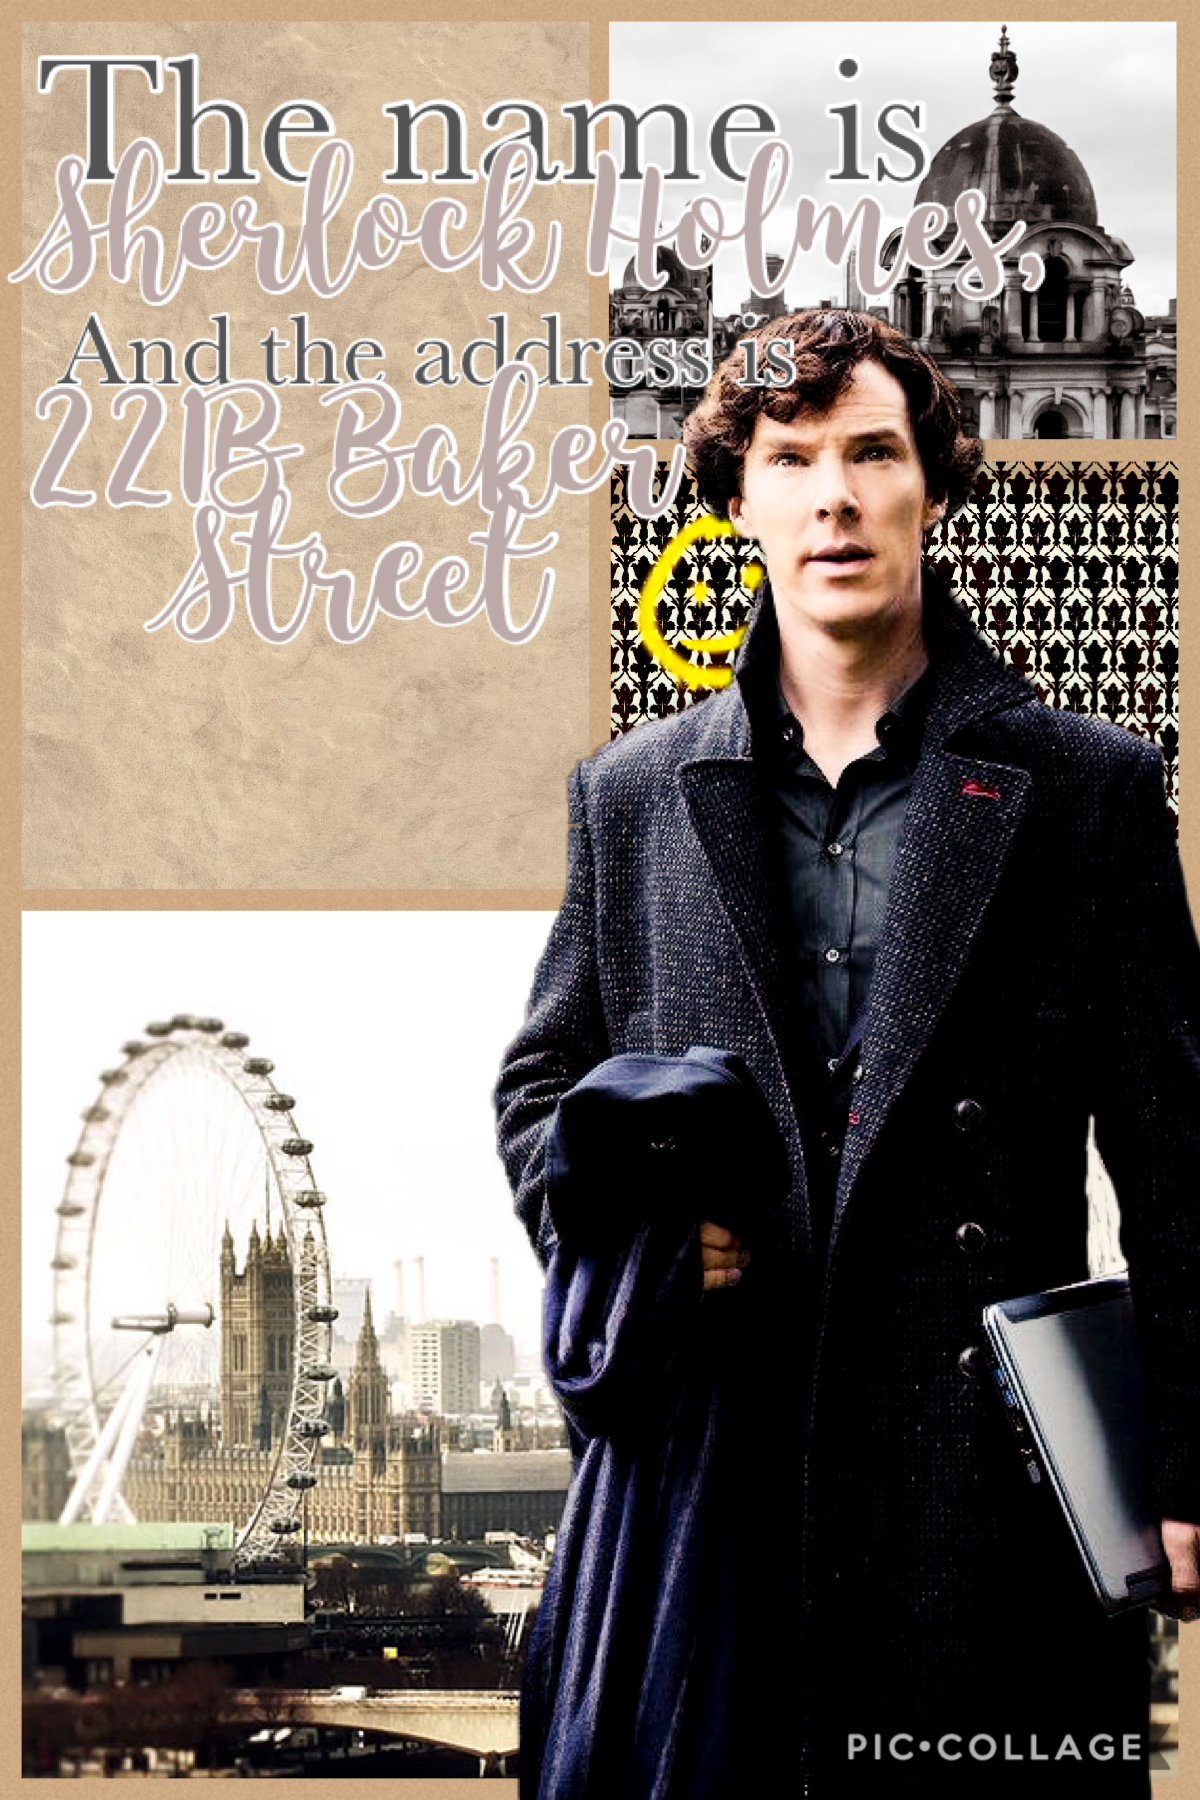 I’m Sherlocked 😂 